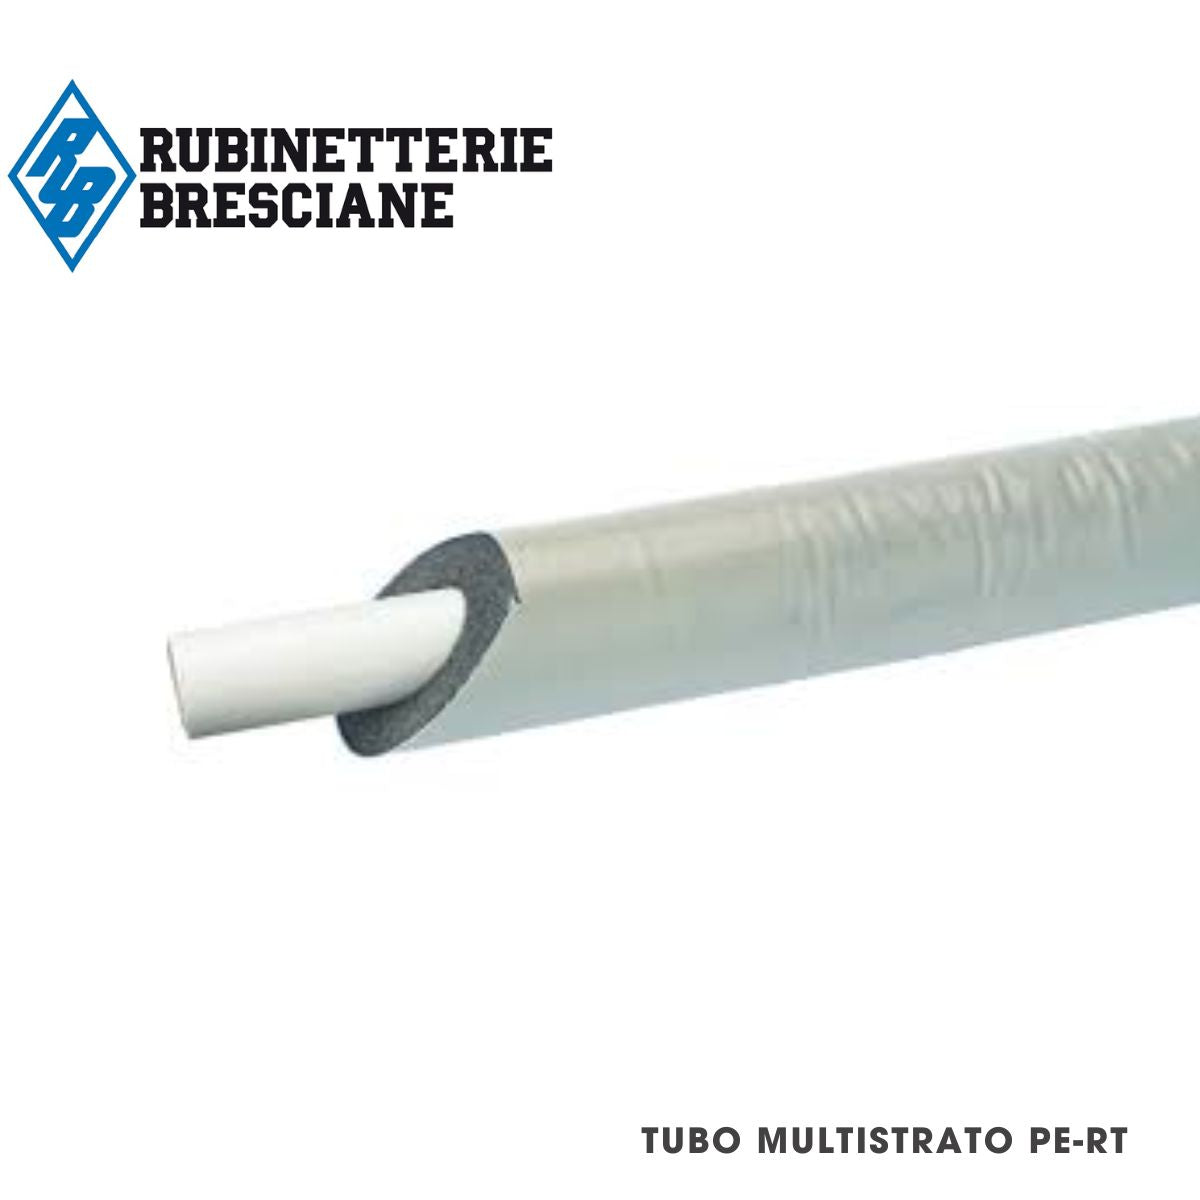 Tubo Multistrato Rivestito Coibentato Refrigerante Modello TURBO-PRESS LBP Tipo PE-RT/Al/PE-RT Diametro 32mm Colore BIANCO Matassa da 25 MT Sp. 10mm